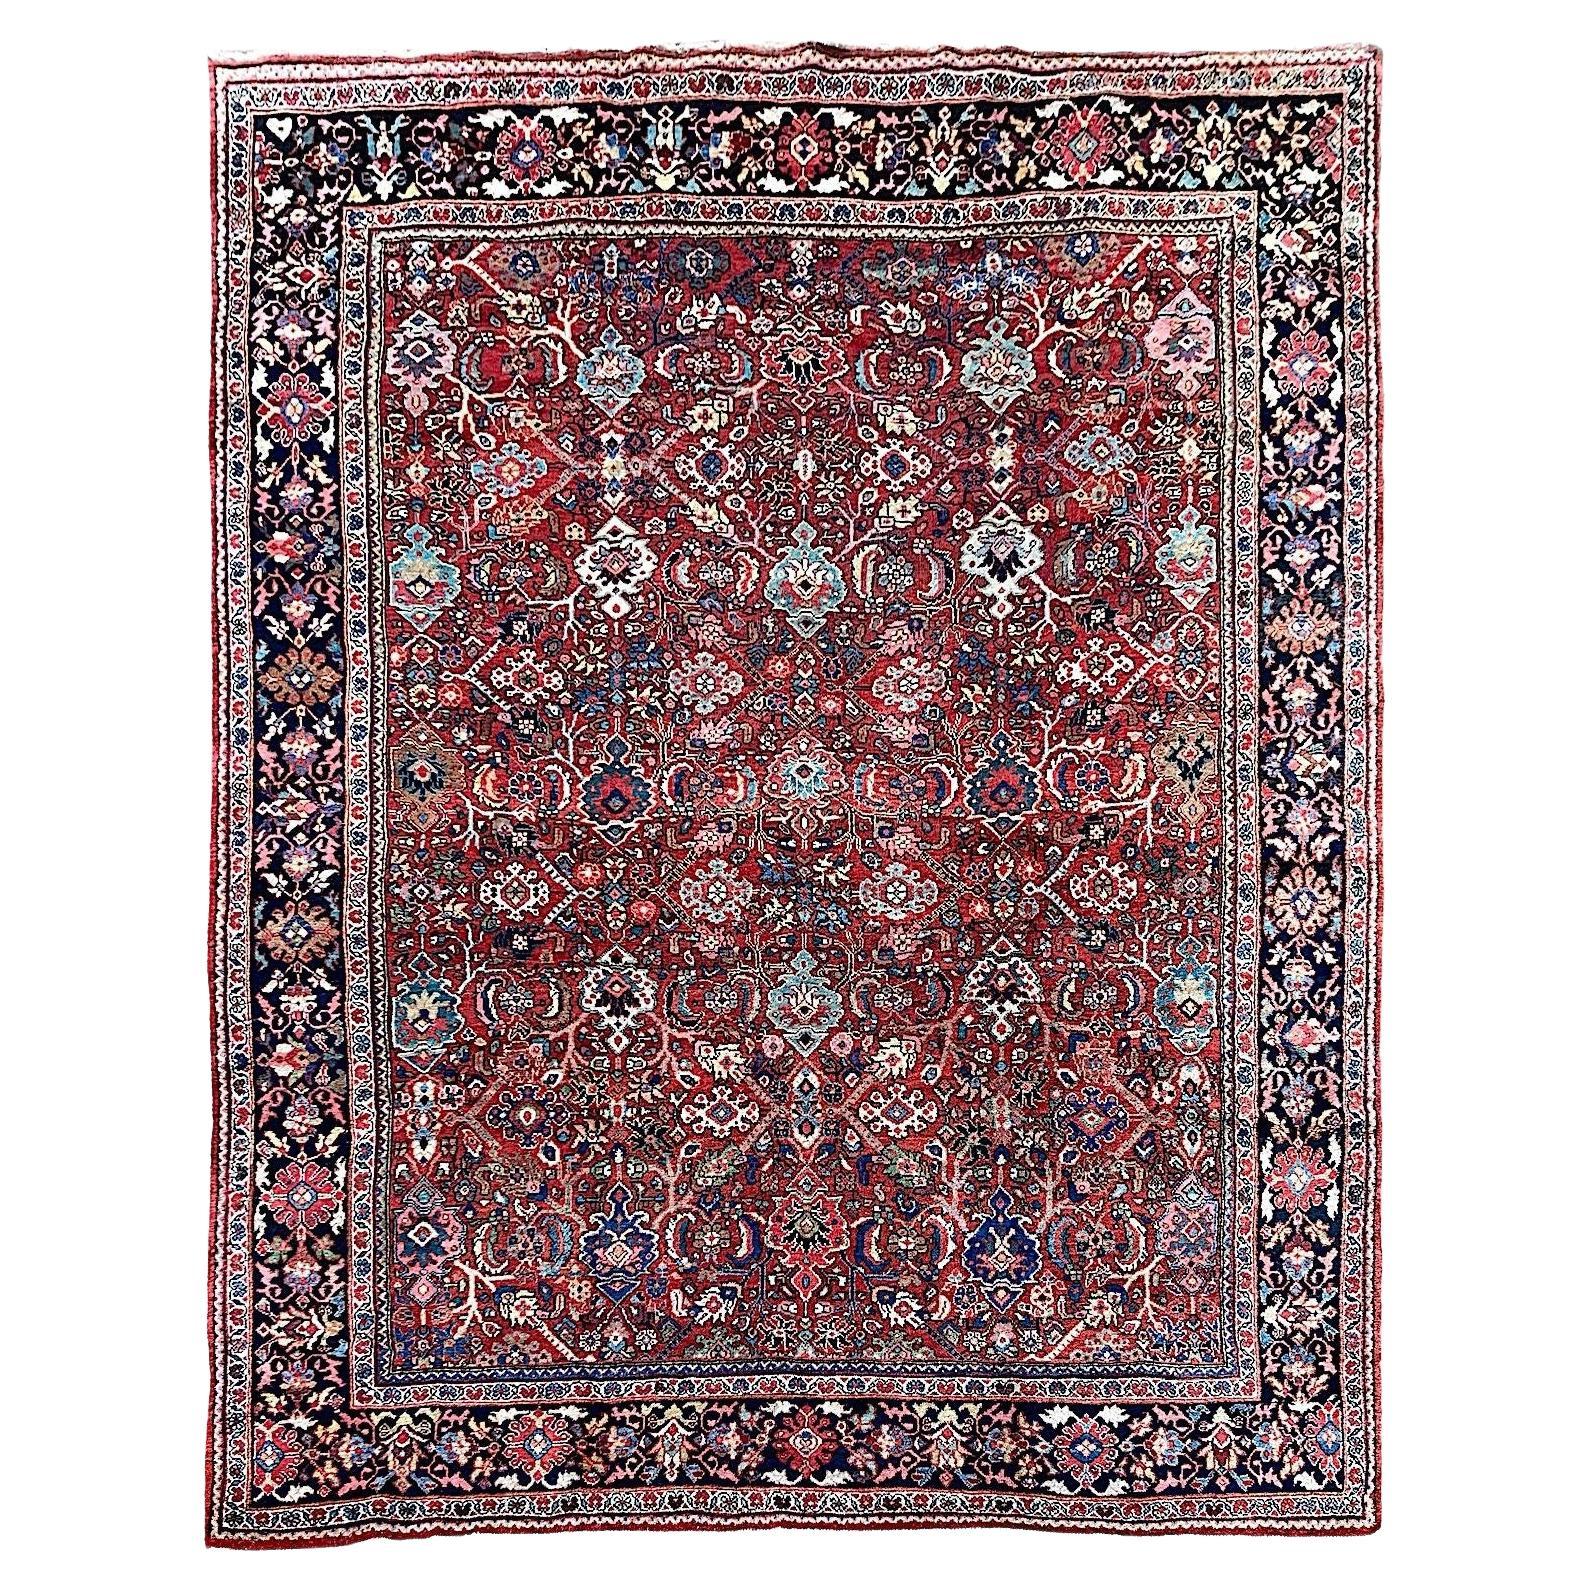 Antique Mahal Carpet 3.63m x 2.81m For Sale